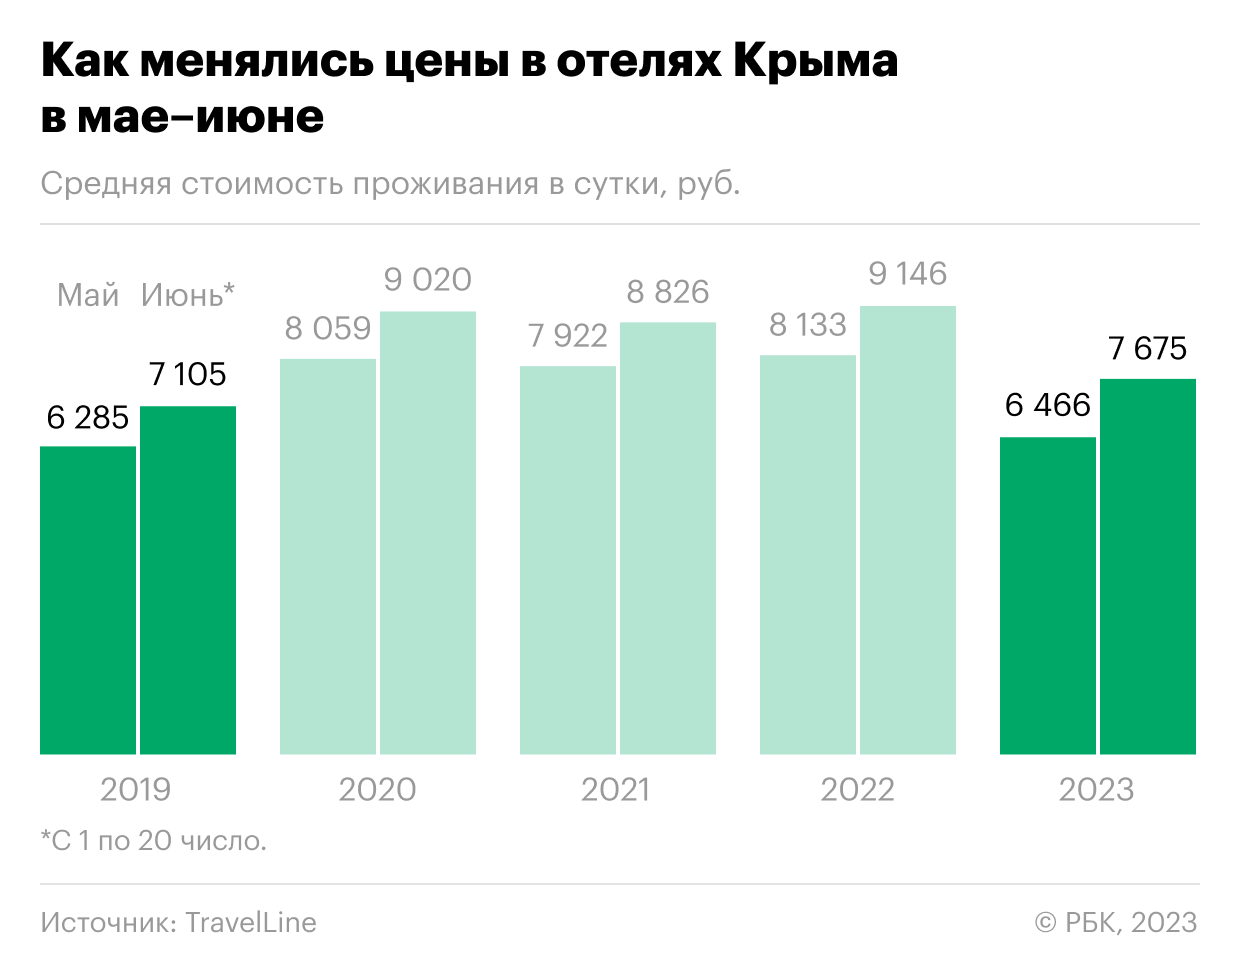 Цены в отелях Крыма в июне опустились до пятилетнего минимума